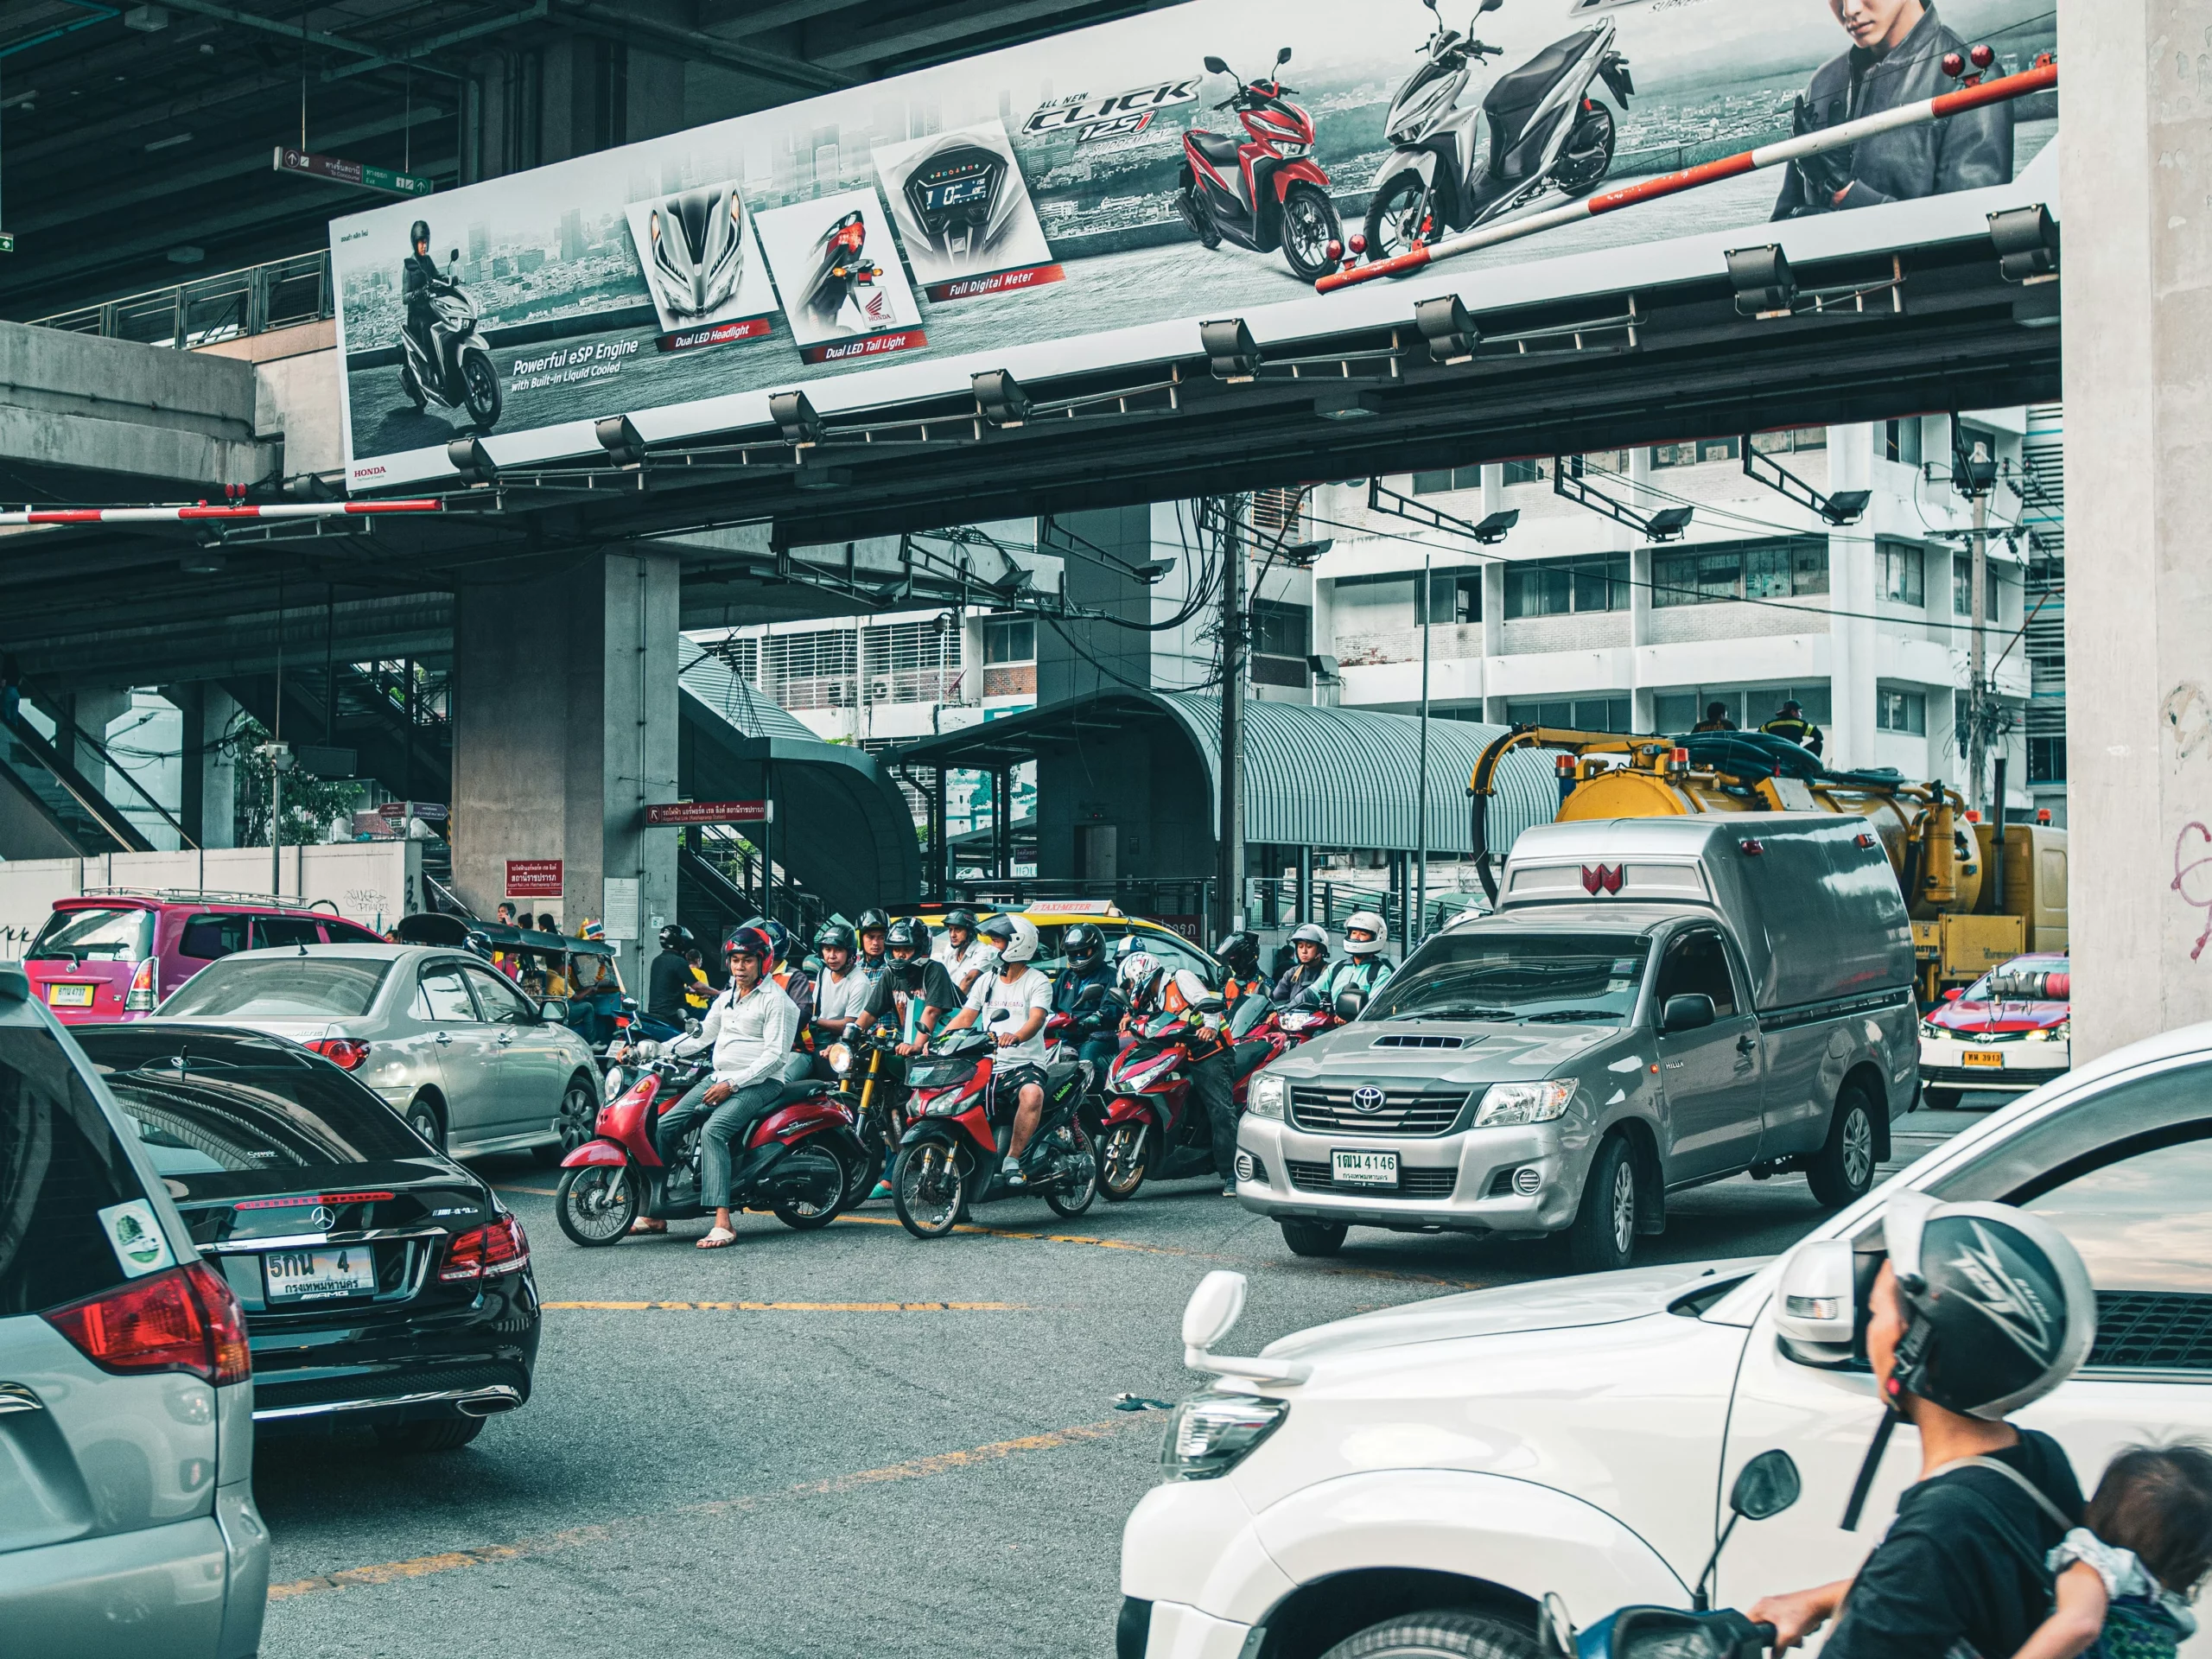 曼谷租車,曼谷街景圖,車道上有許多機超與汽車,不分道,塞車